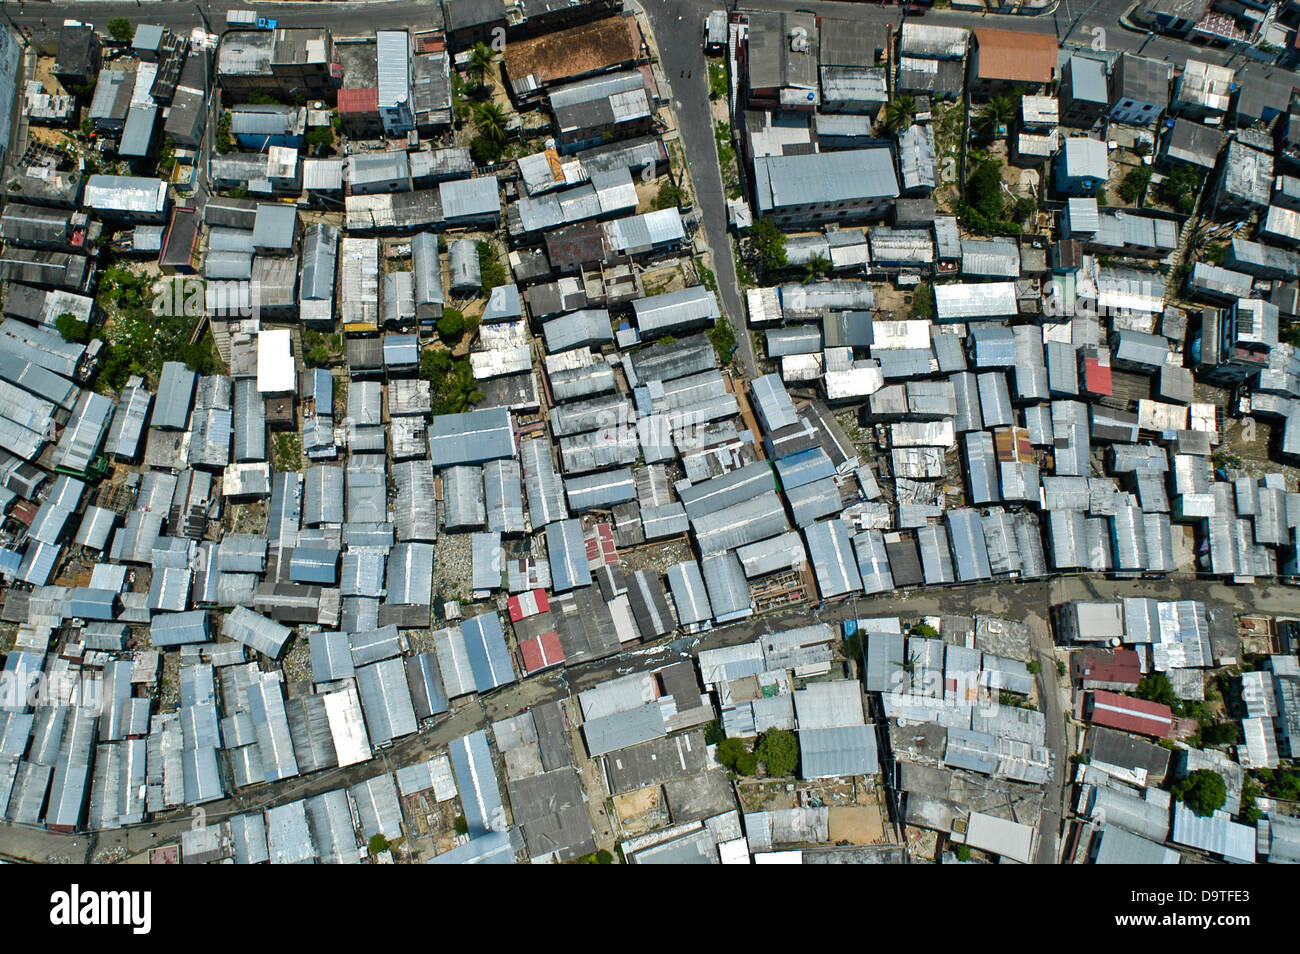 La ville de Manaus banlieue, l'état d'Amazonas, au Brésil. Les toits de zinc. quartier pauvre Vue de dessus Banque D'Images